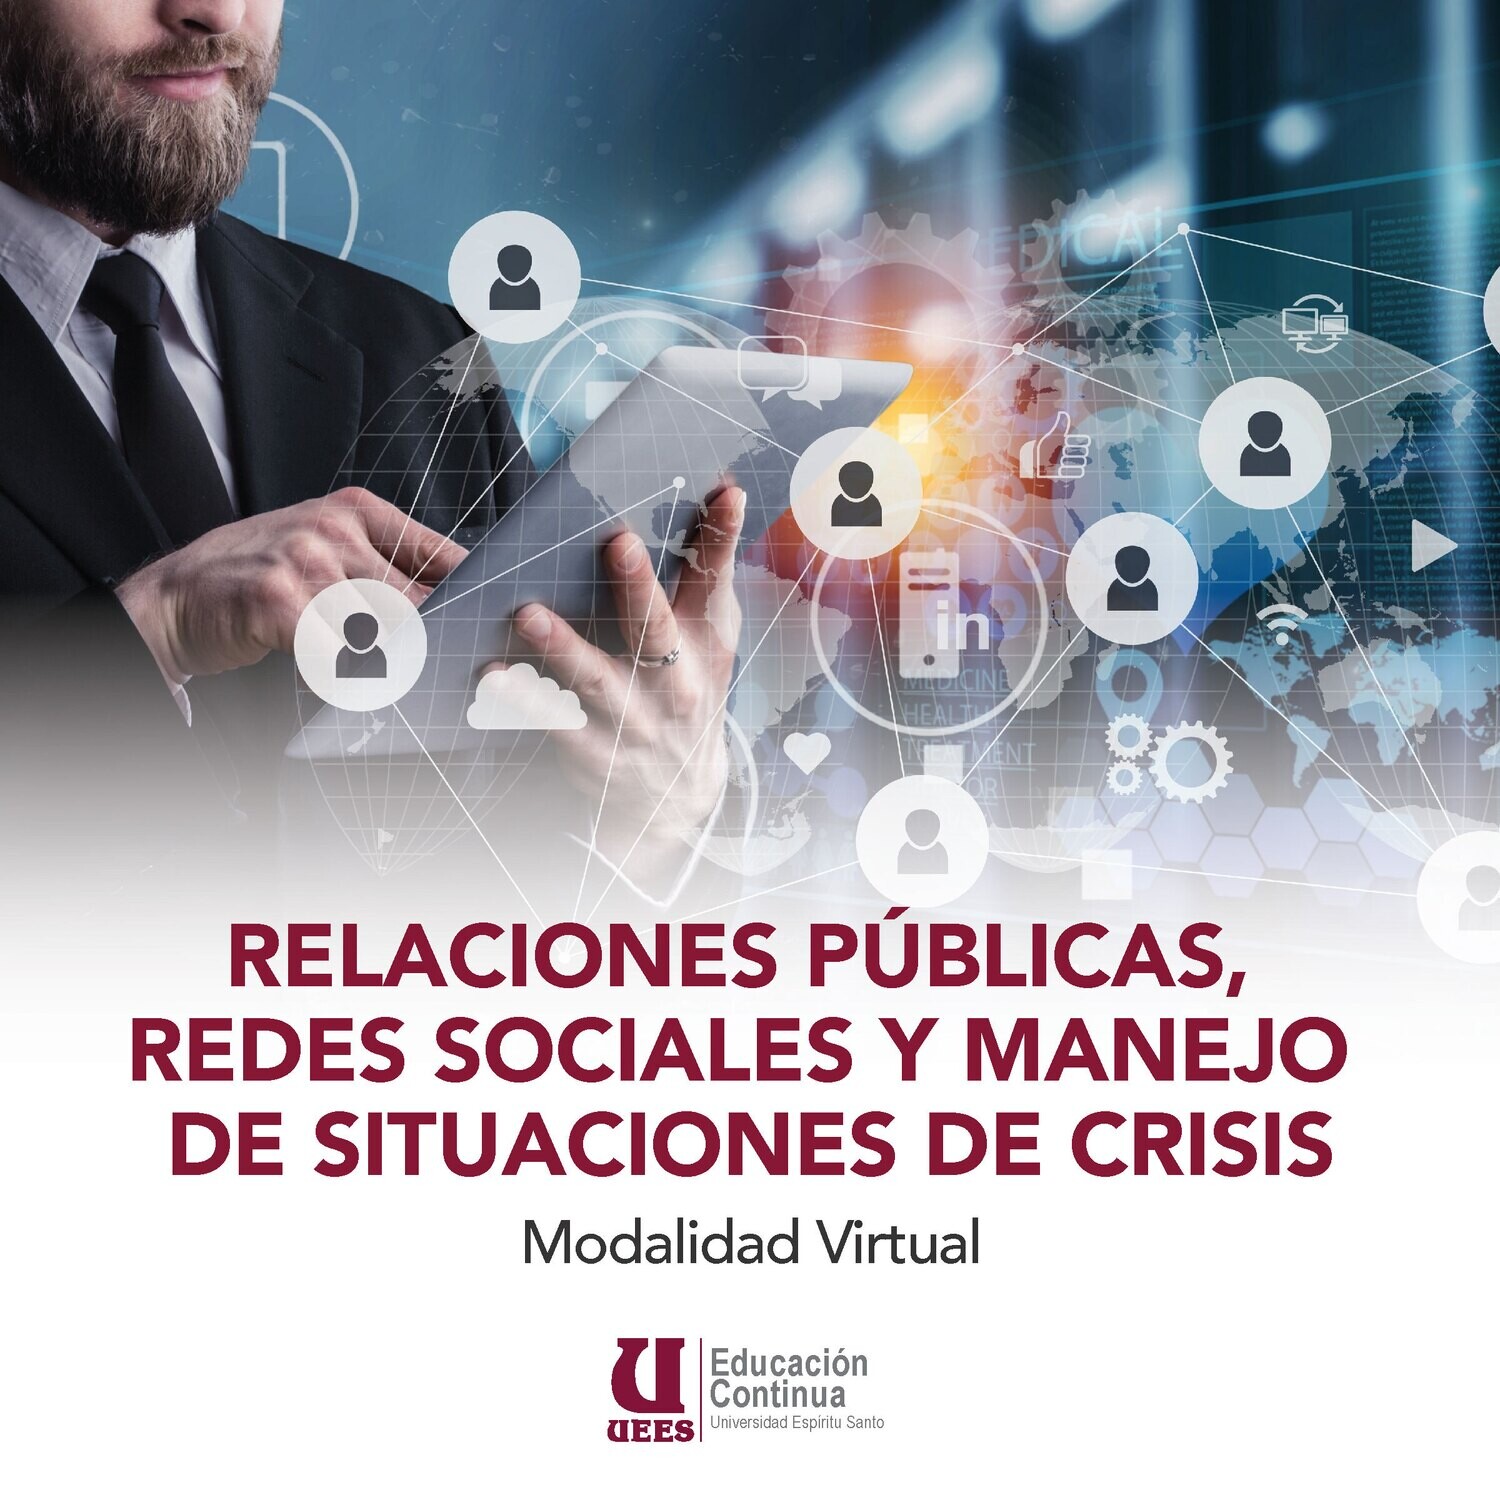 Relaciones Publicas, redes sociales y situaciones de crisis